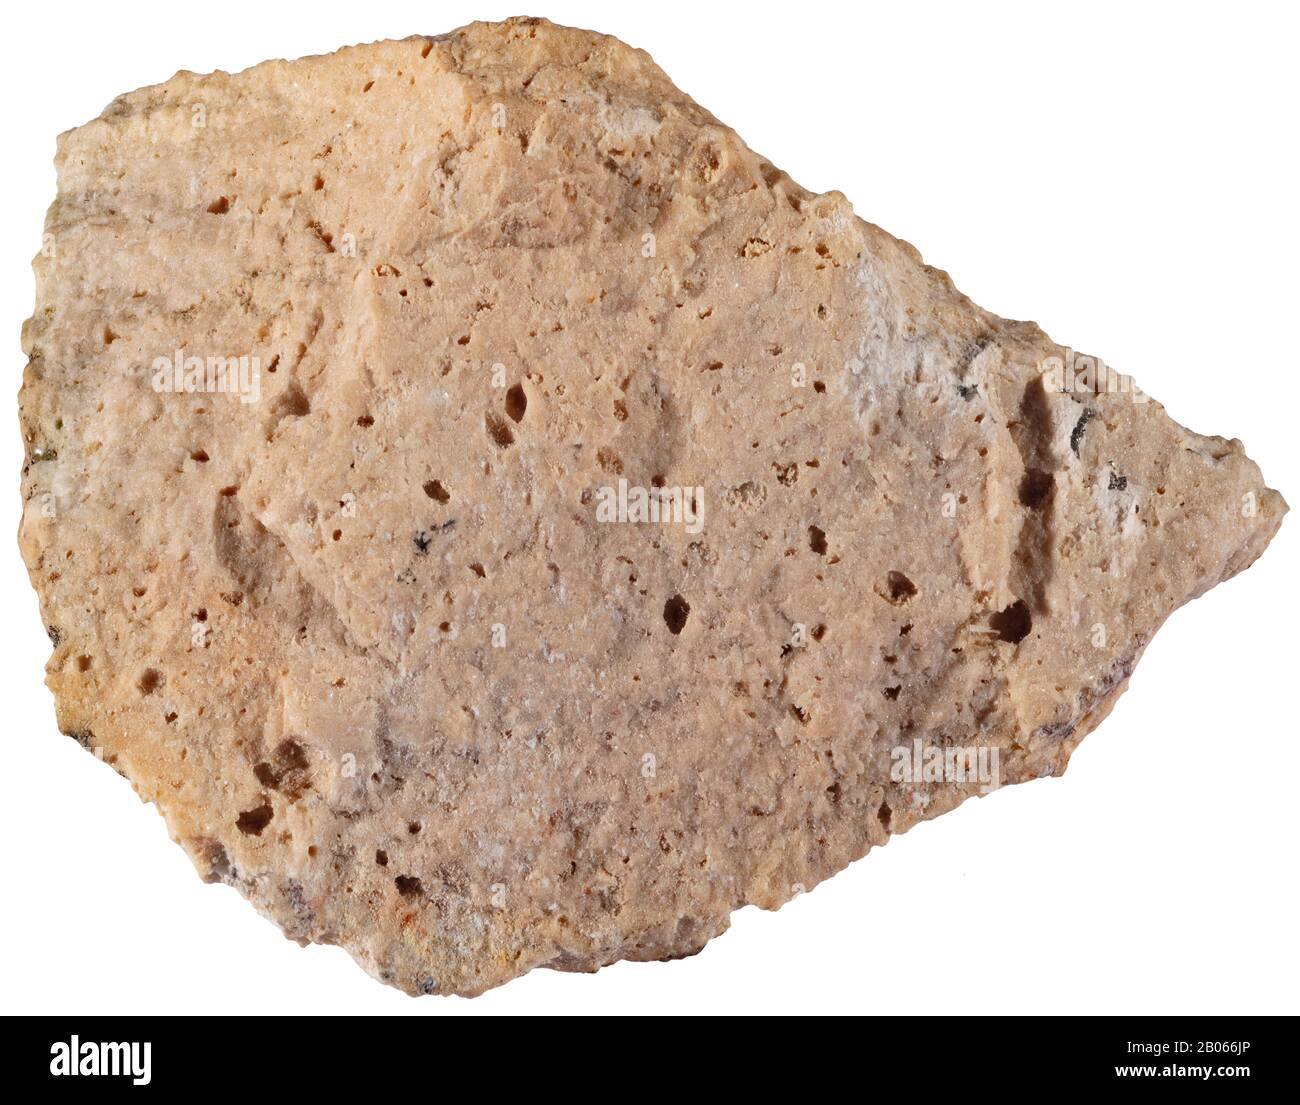 Argilla, Ottawa, i minerali di Clay sono comuni minerali atmosferici; fillosilicati di alluminio idrato, a volte con quantità variabili di ferro, magnesio, A. Foto Stock